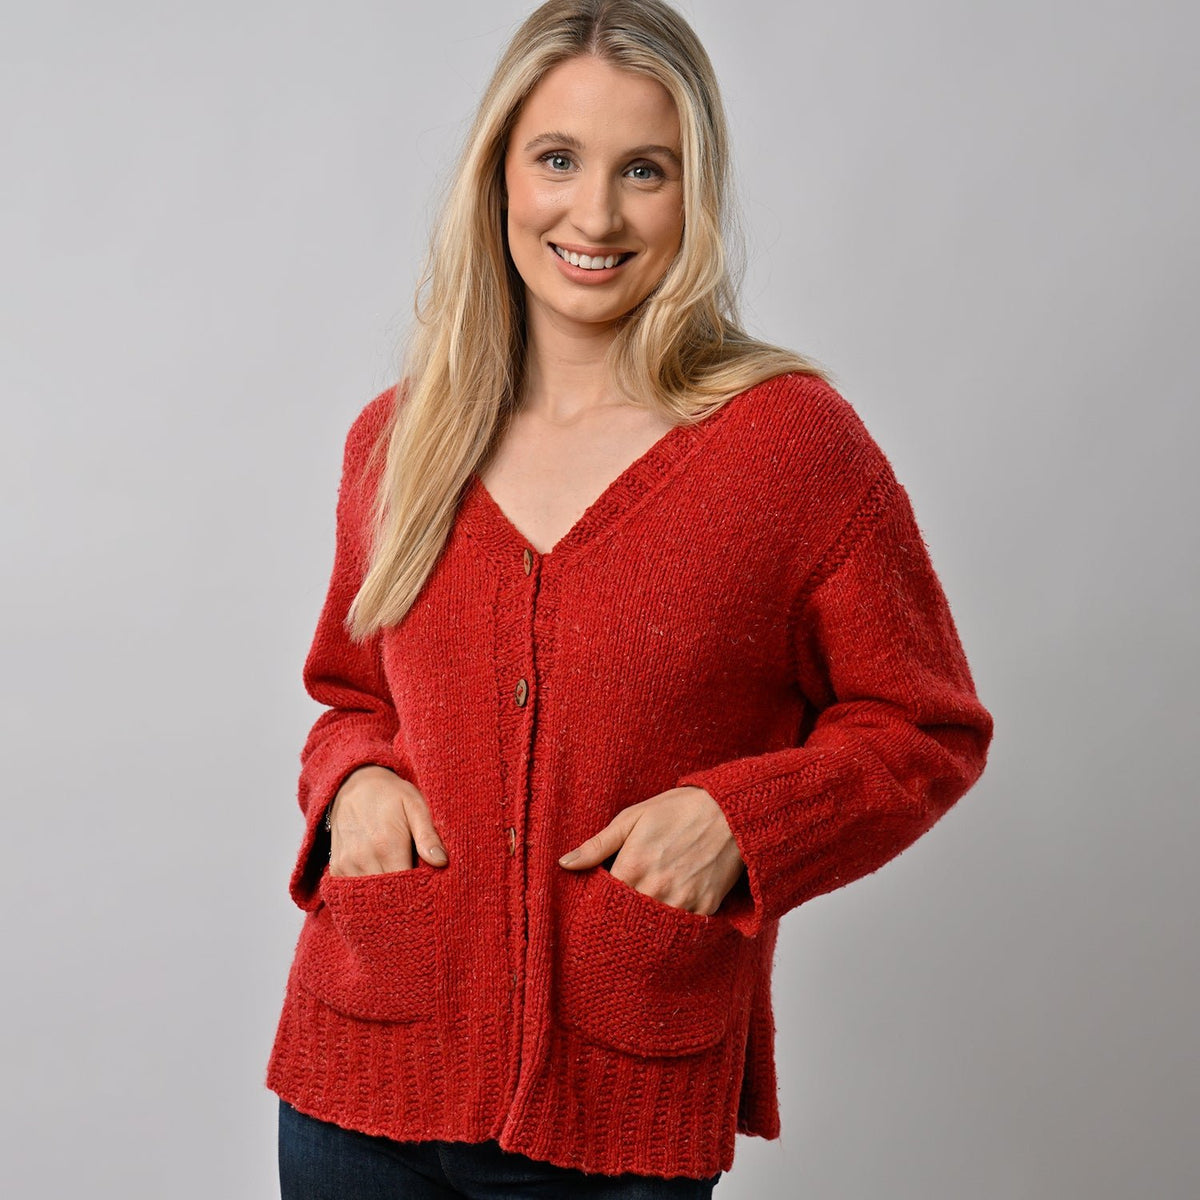 Spring Cardigan Knitting Kit Wool Couture